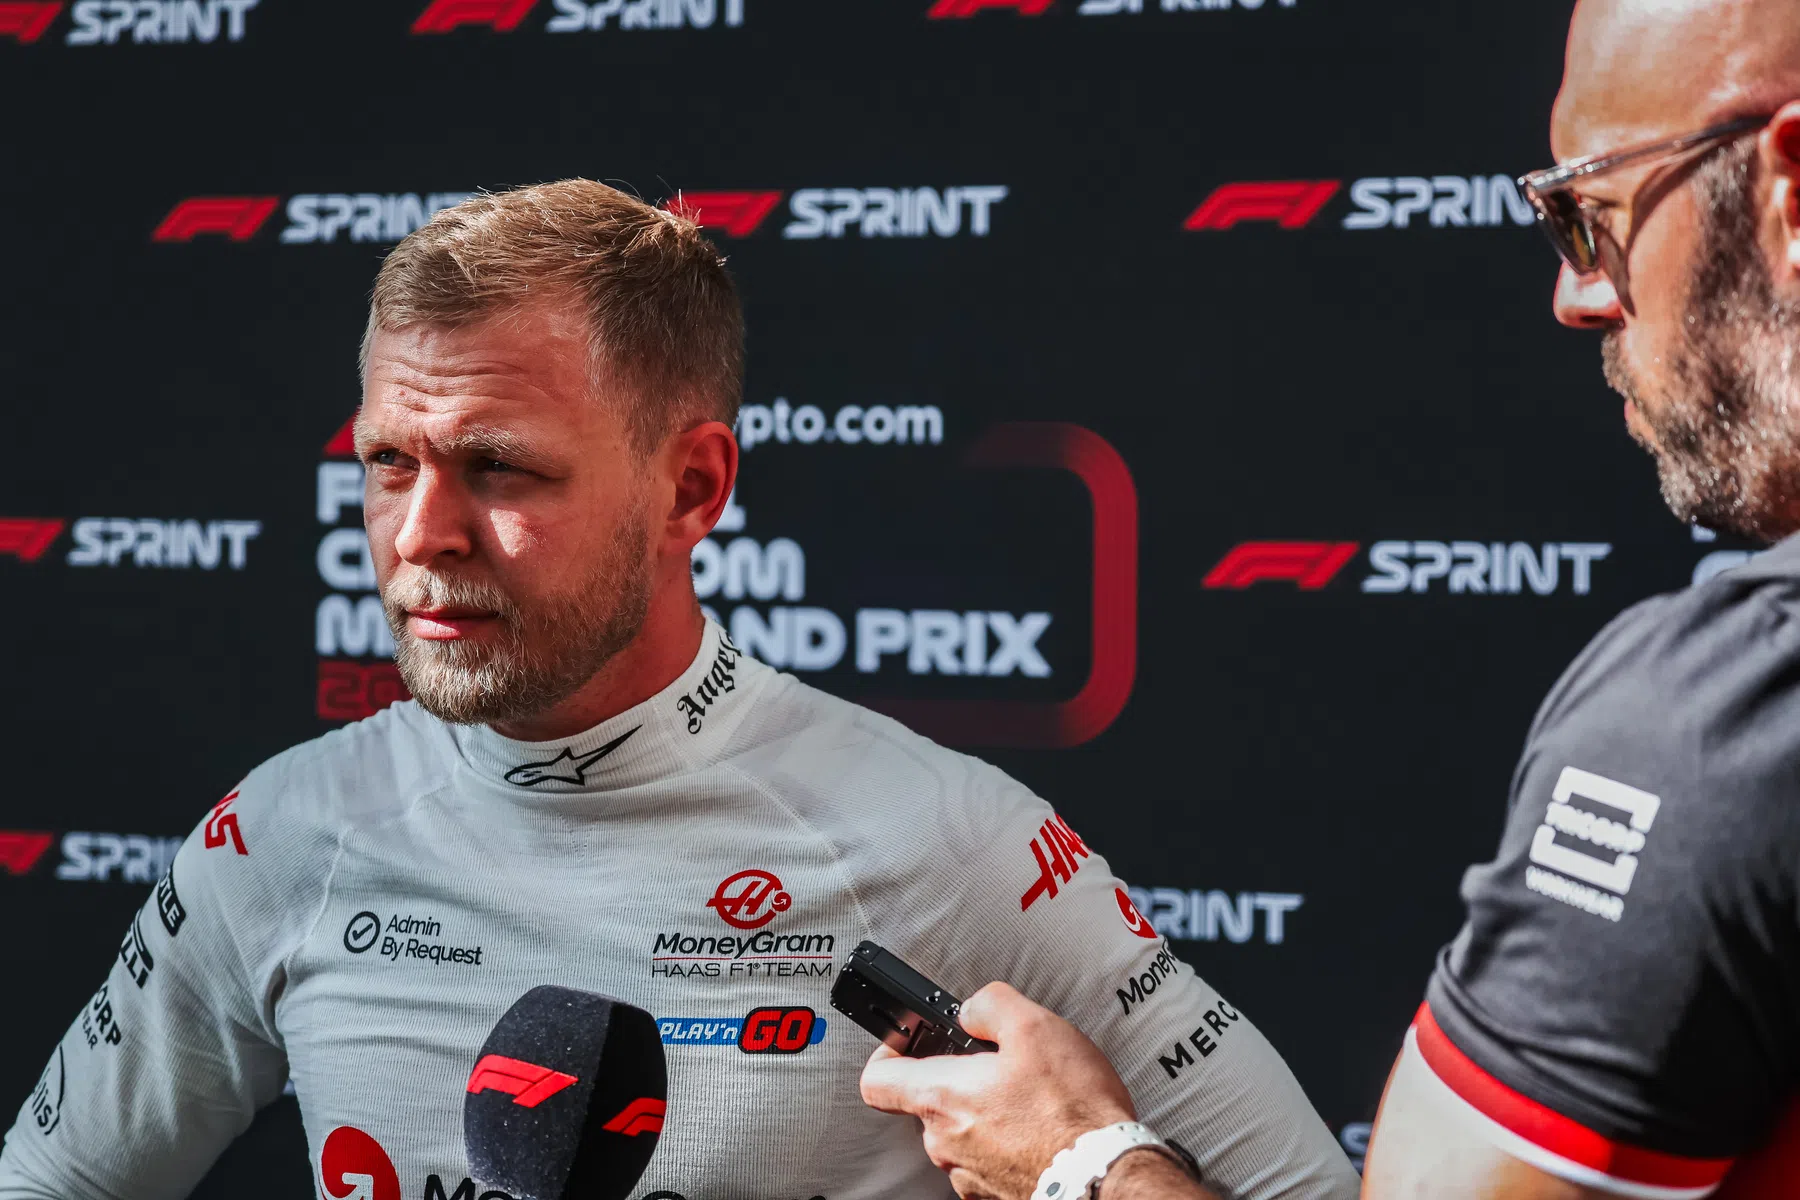 Análise: Magnussen mostra que não há lugar para ele na Fórmula 1